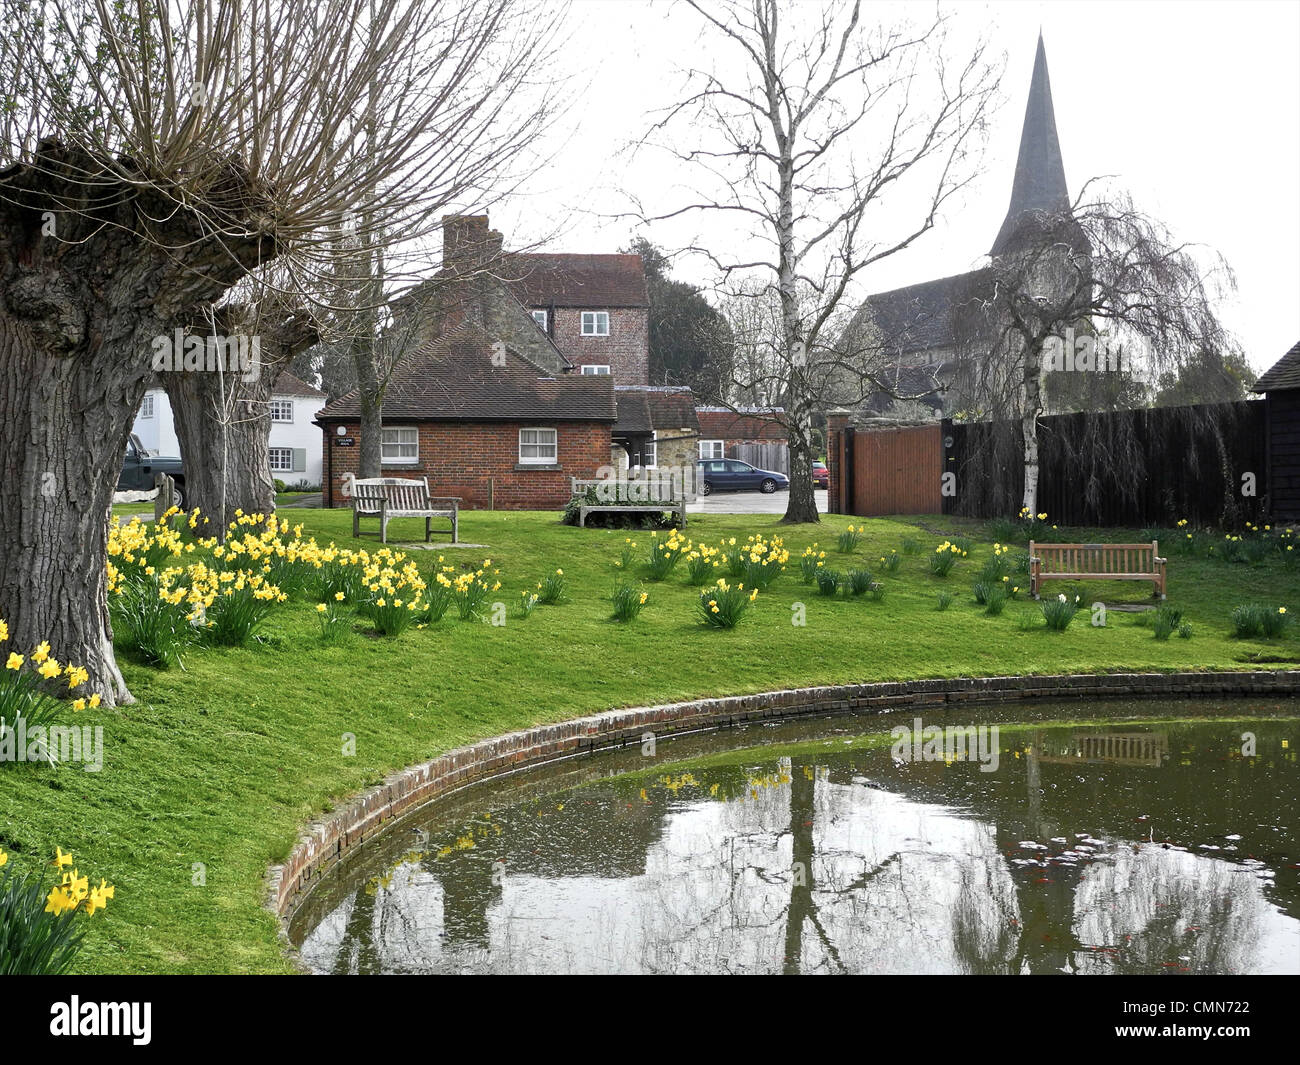 Wisborough Green, West Sussex - village pond Stock Photo